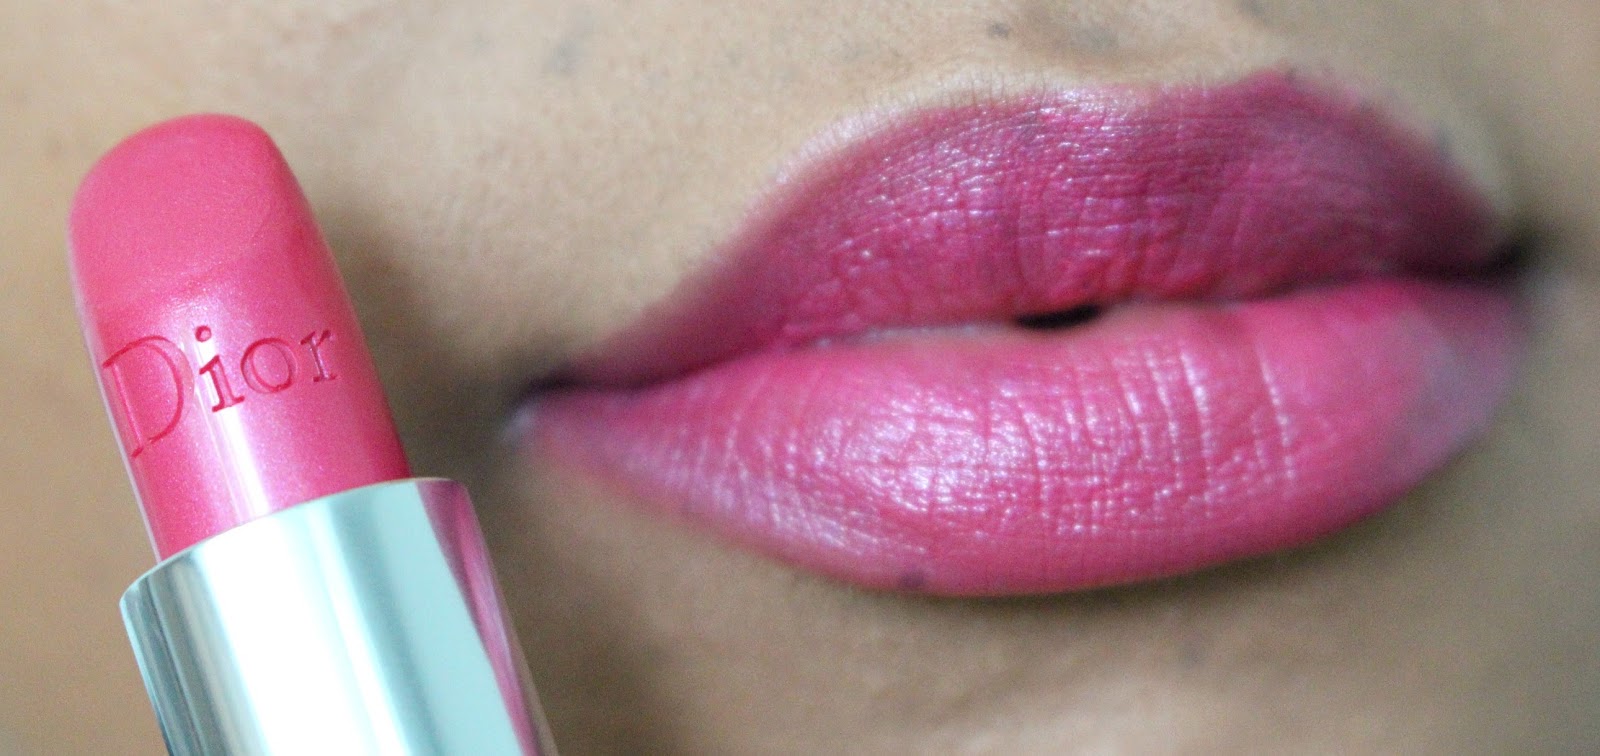 pot Turbine Toegepast Samantha Jane: DIOR Rouge Dior Lipstick Swatches